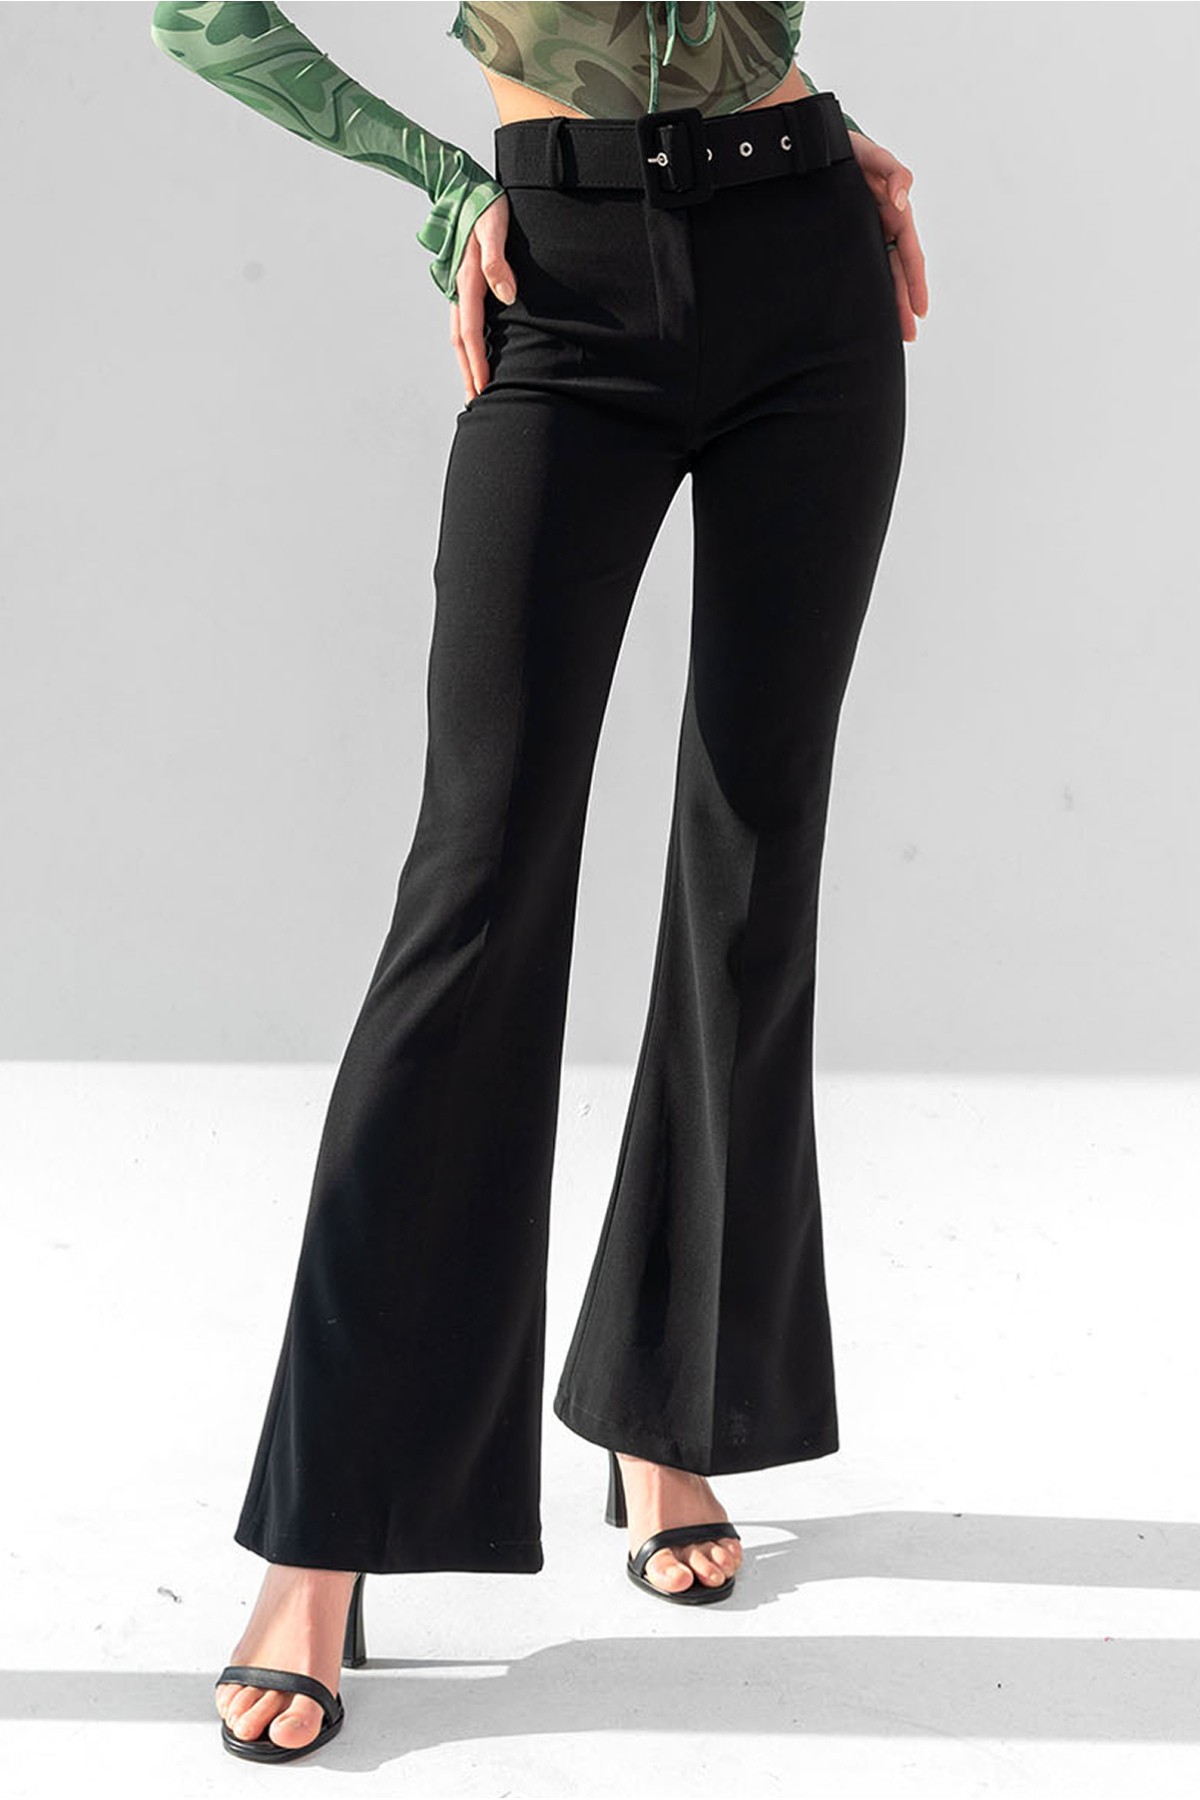 Kadın Kemerli Yüksek Bel İspanyol Paça Pantolon - Siyah